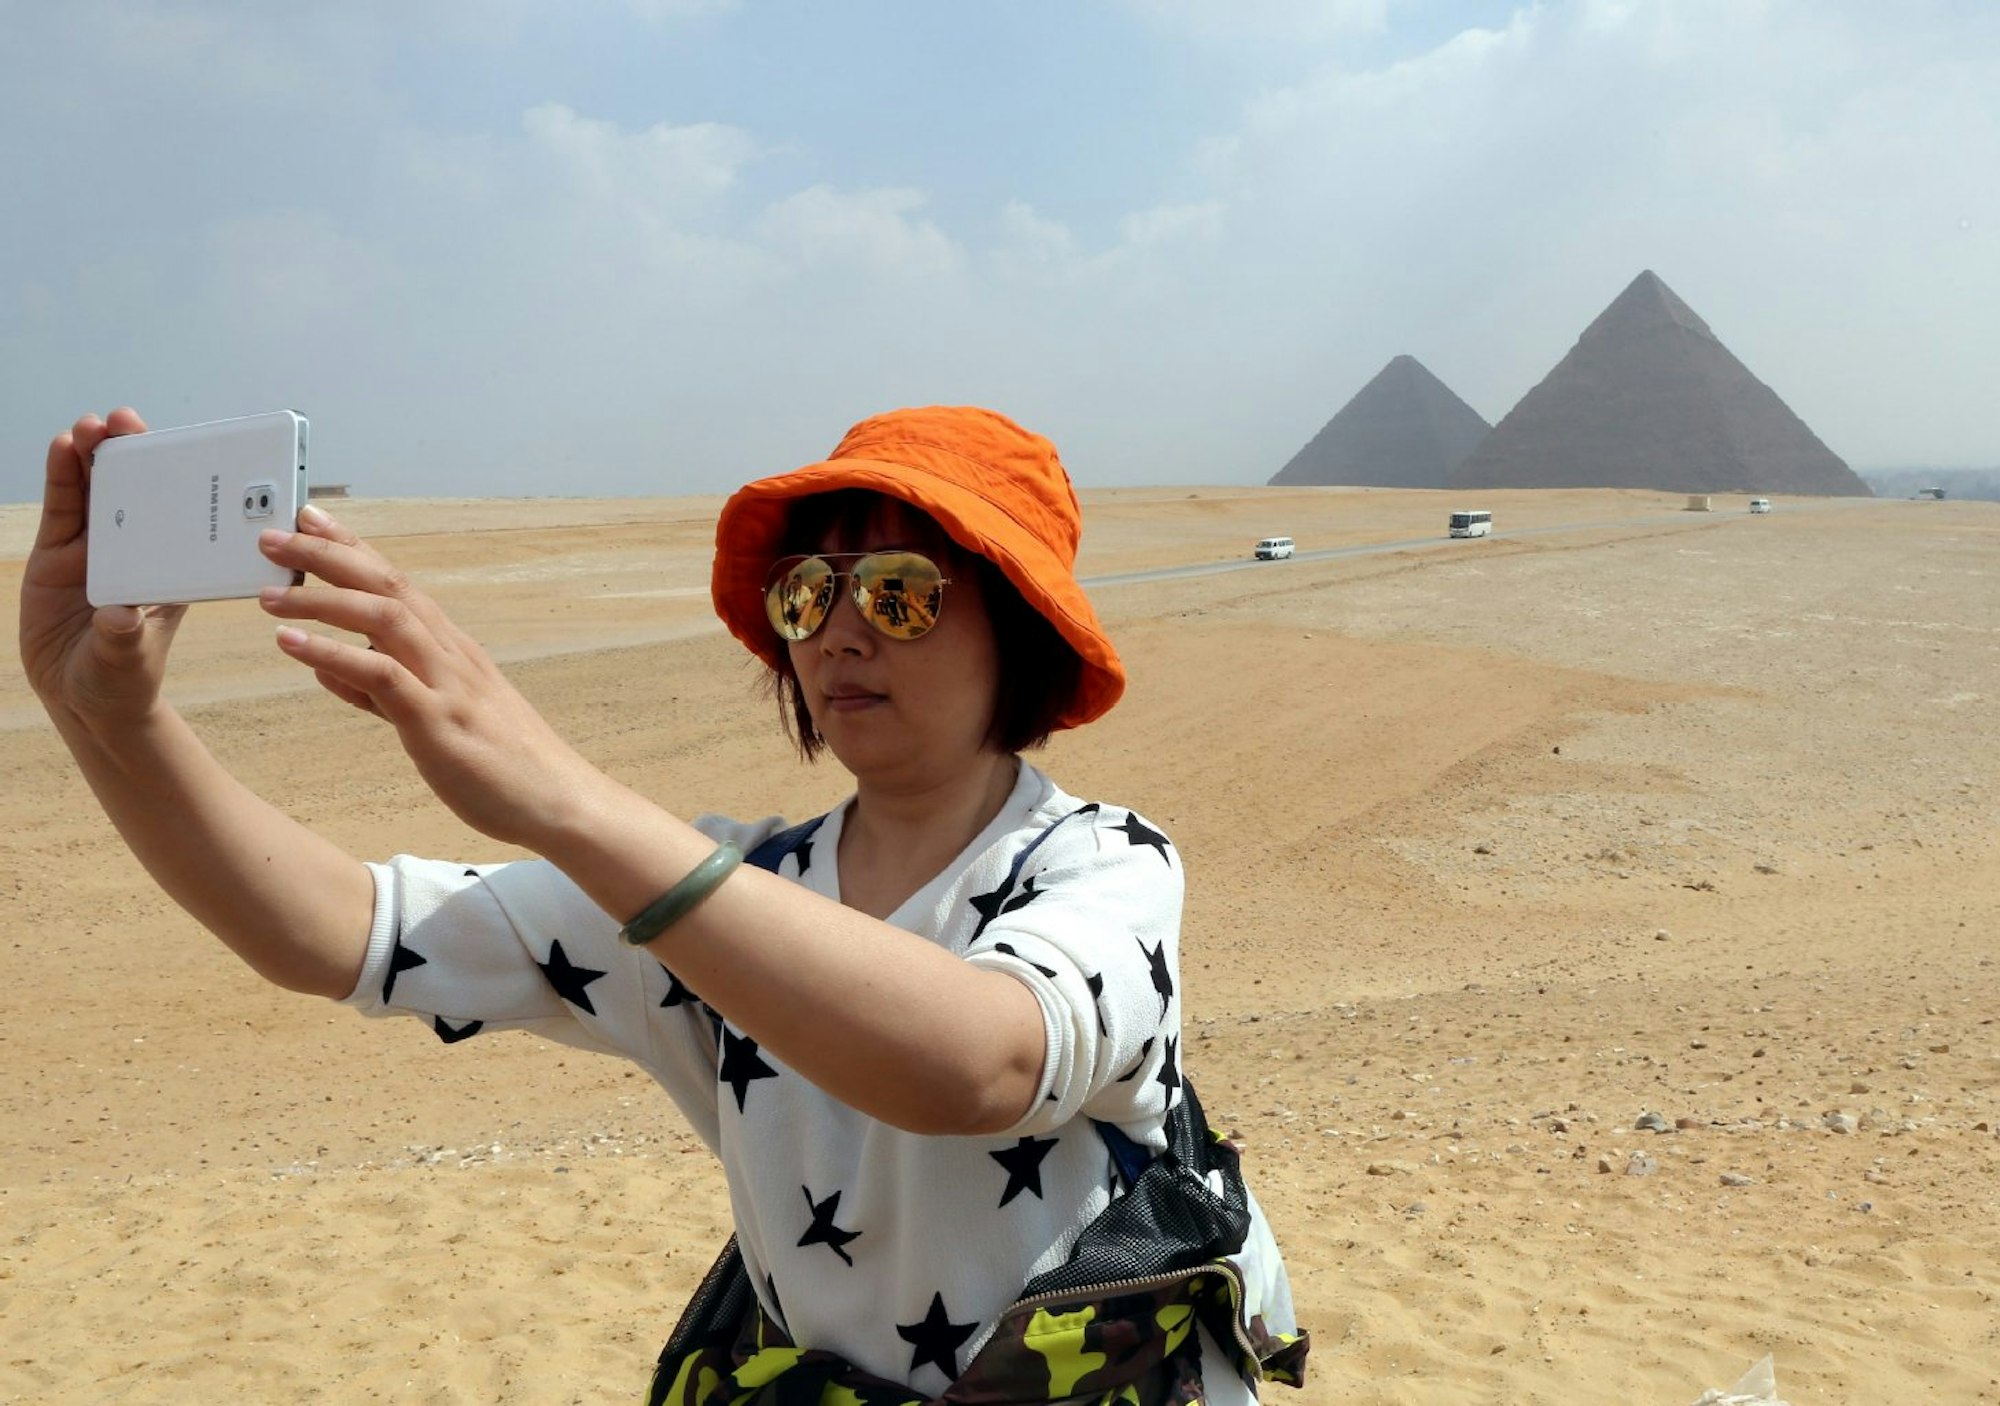 Fotos von Reisen, wie hier in Ägypten, sollen später an die unbeschwerte Ferienzeit erinnern. Aber nicht an allen Orten sind die Handy-Schnapschüsse auch erlaubt. (Symbolbild)